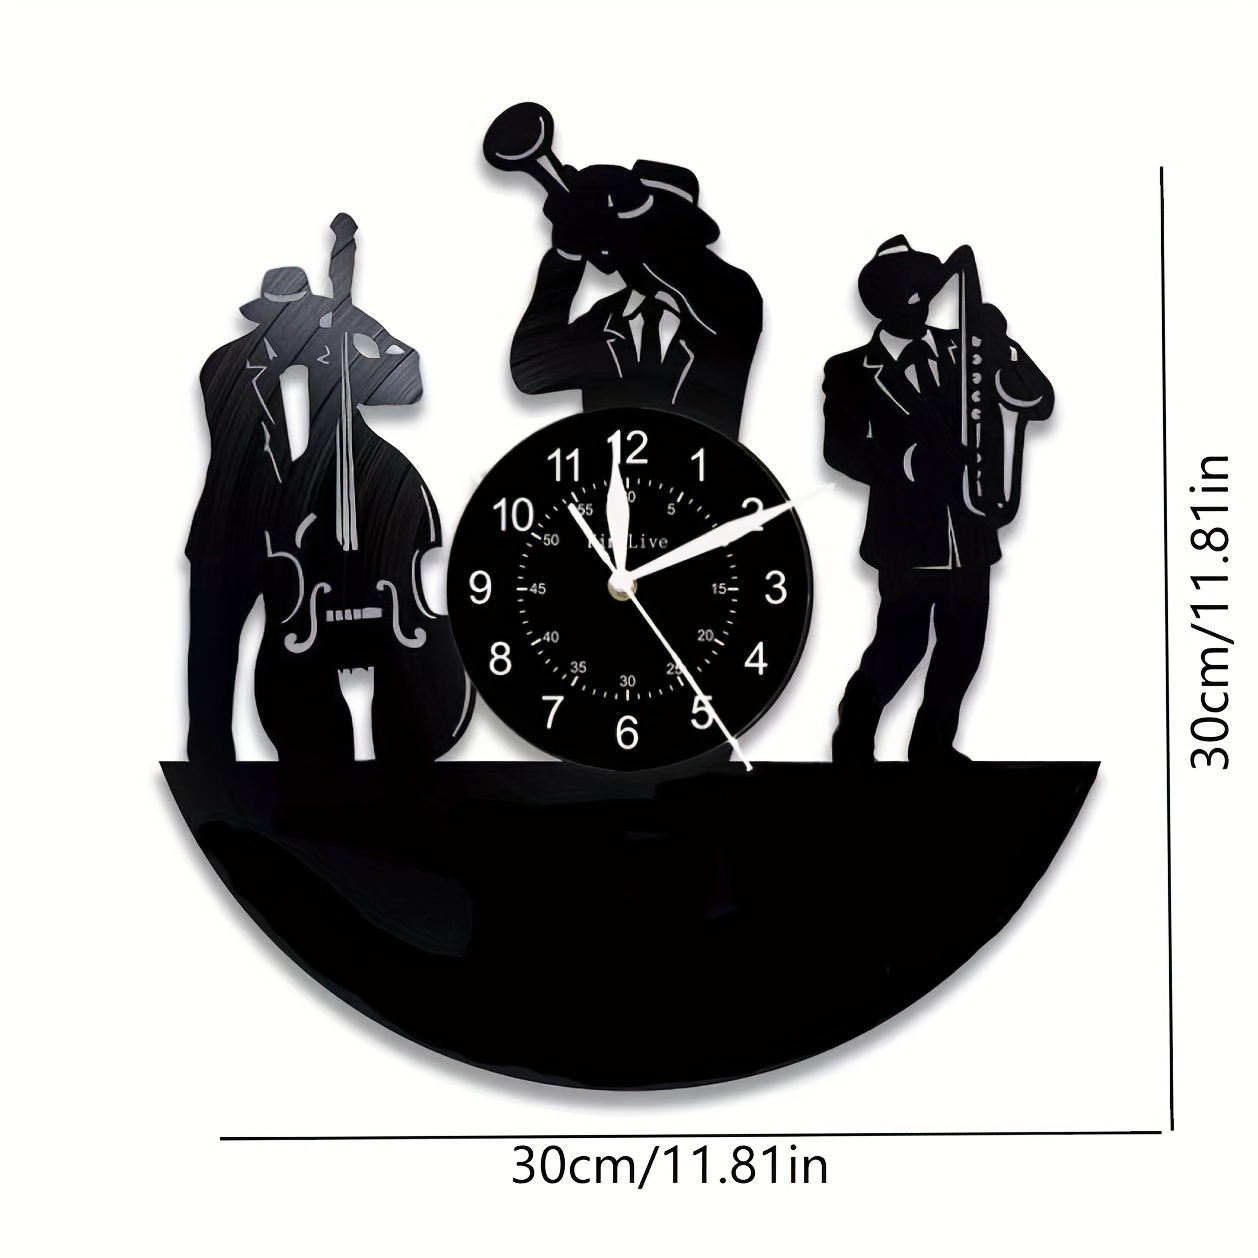 1pc ミニマリストクラシック音楽ビニール時計、音楽ジャンル家の装飾